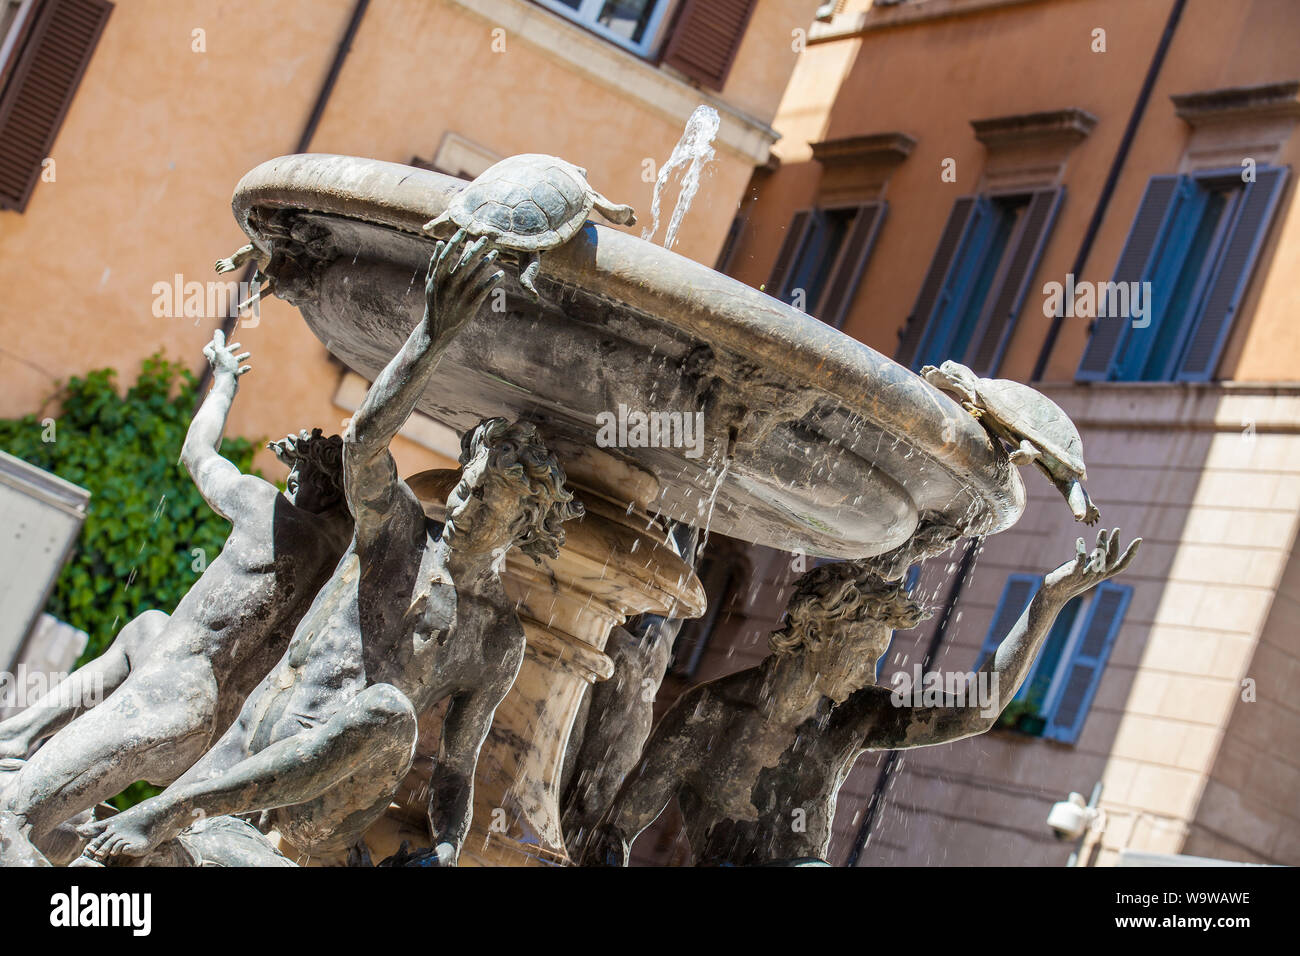 La tortue fontaine située sur la place Piazza Mattei construit en 1588 par l'architecte Giacomo della Porta Banque D'Images